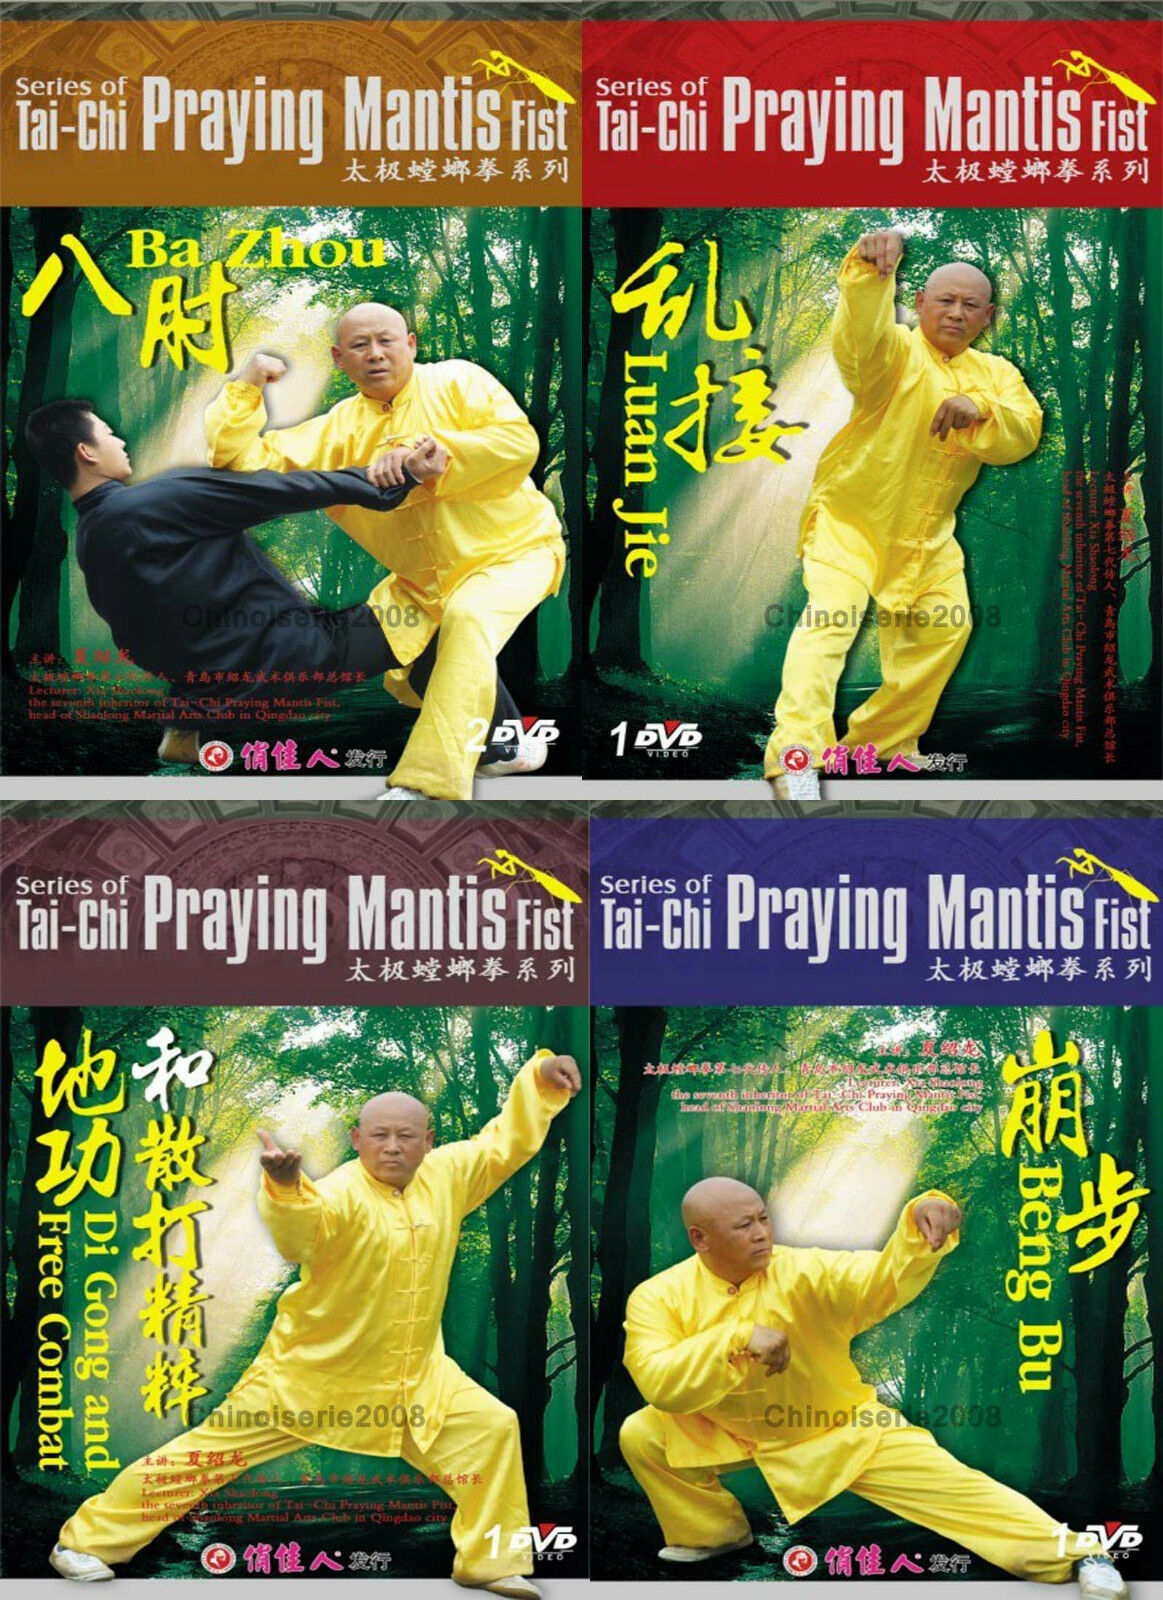 太極拳カマキリ拳シリーズ 5 DVD セット by Xia Shaolong